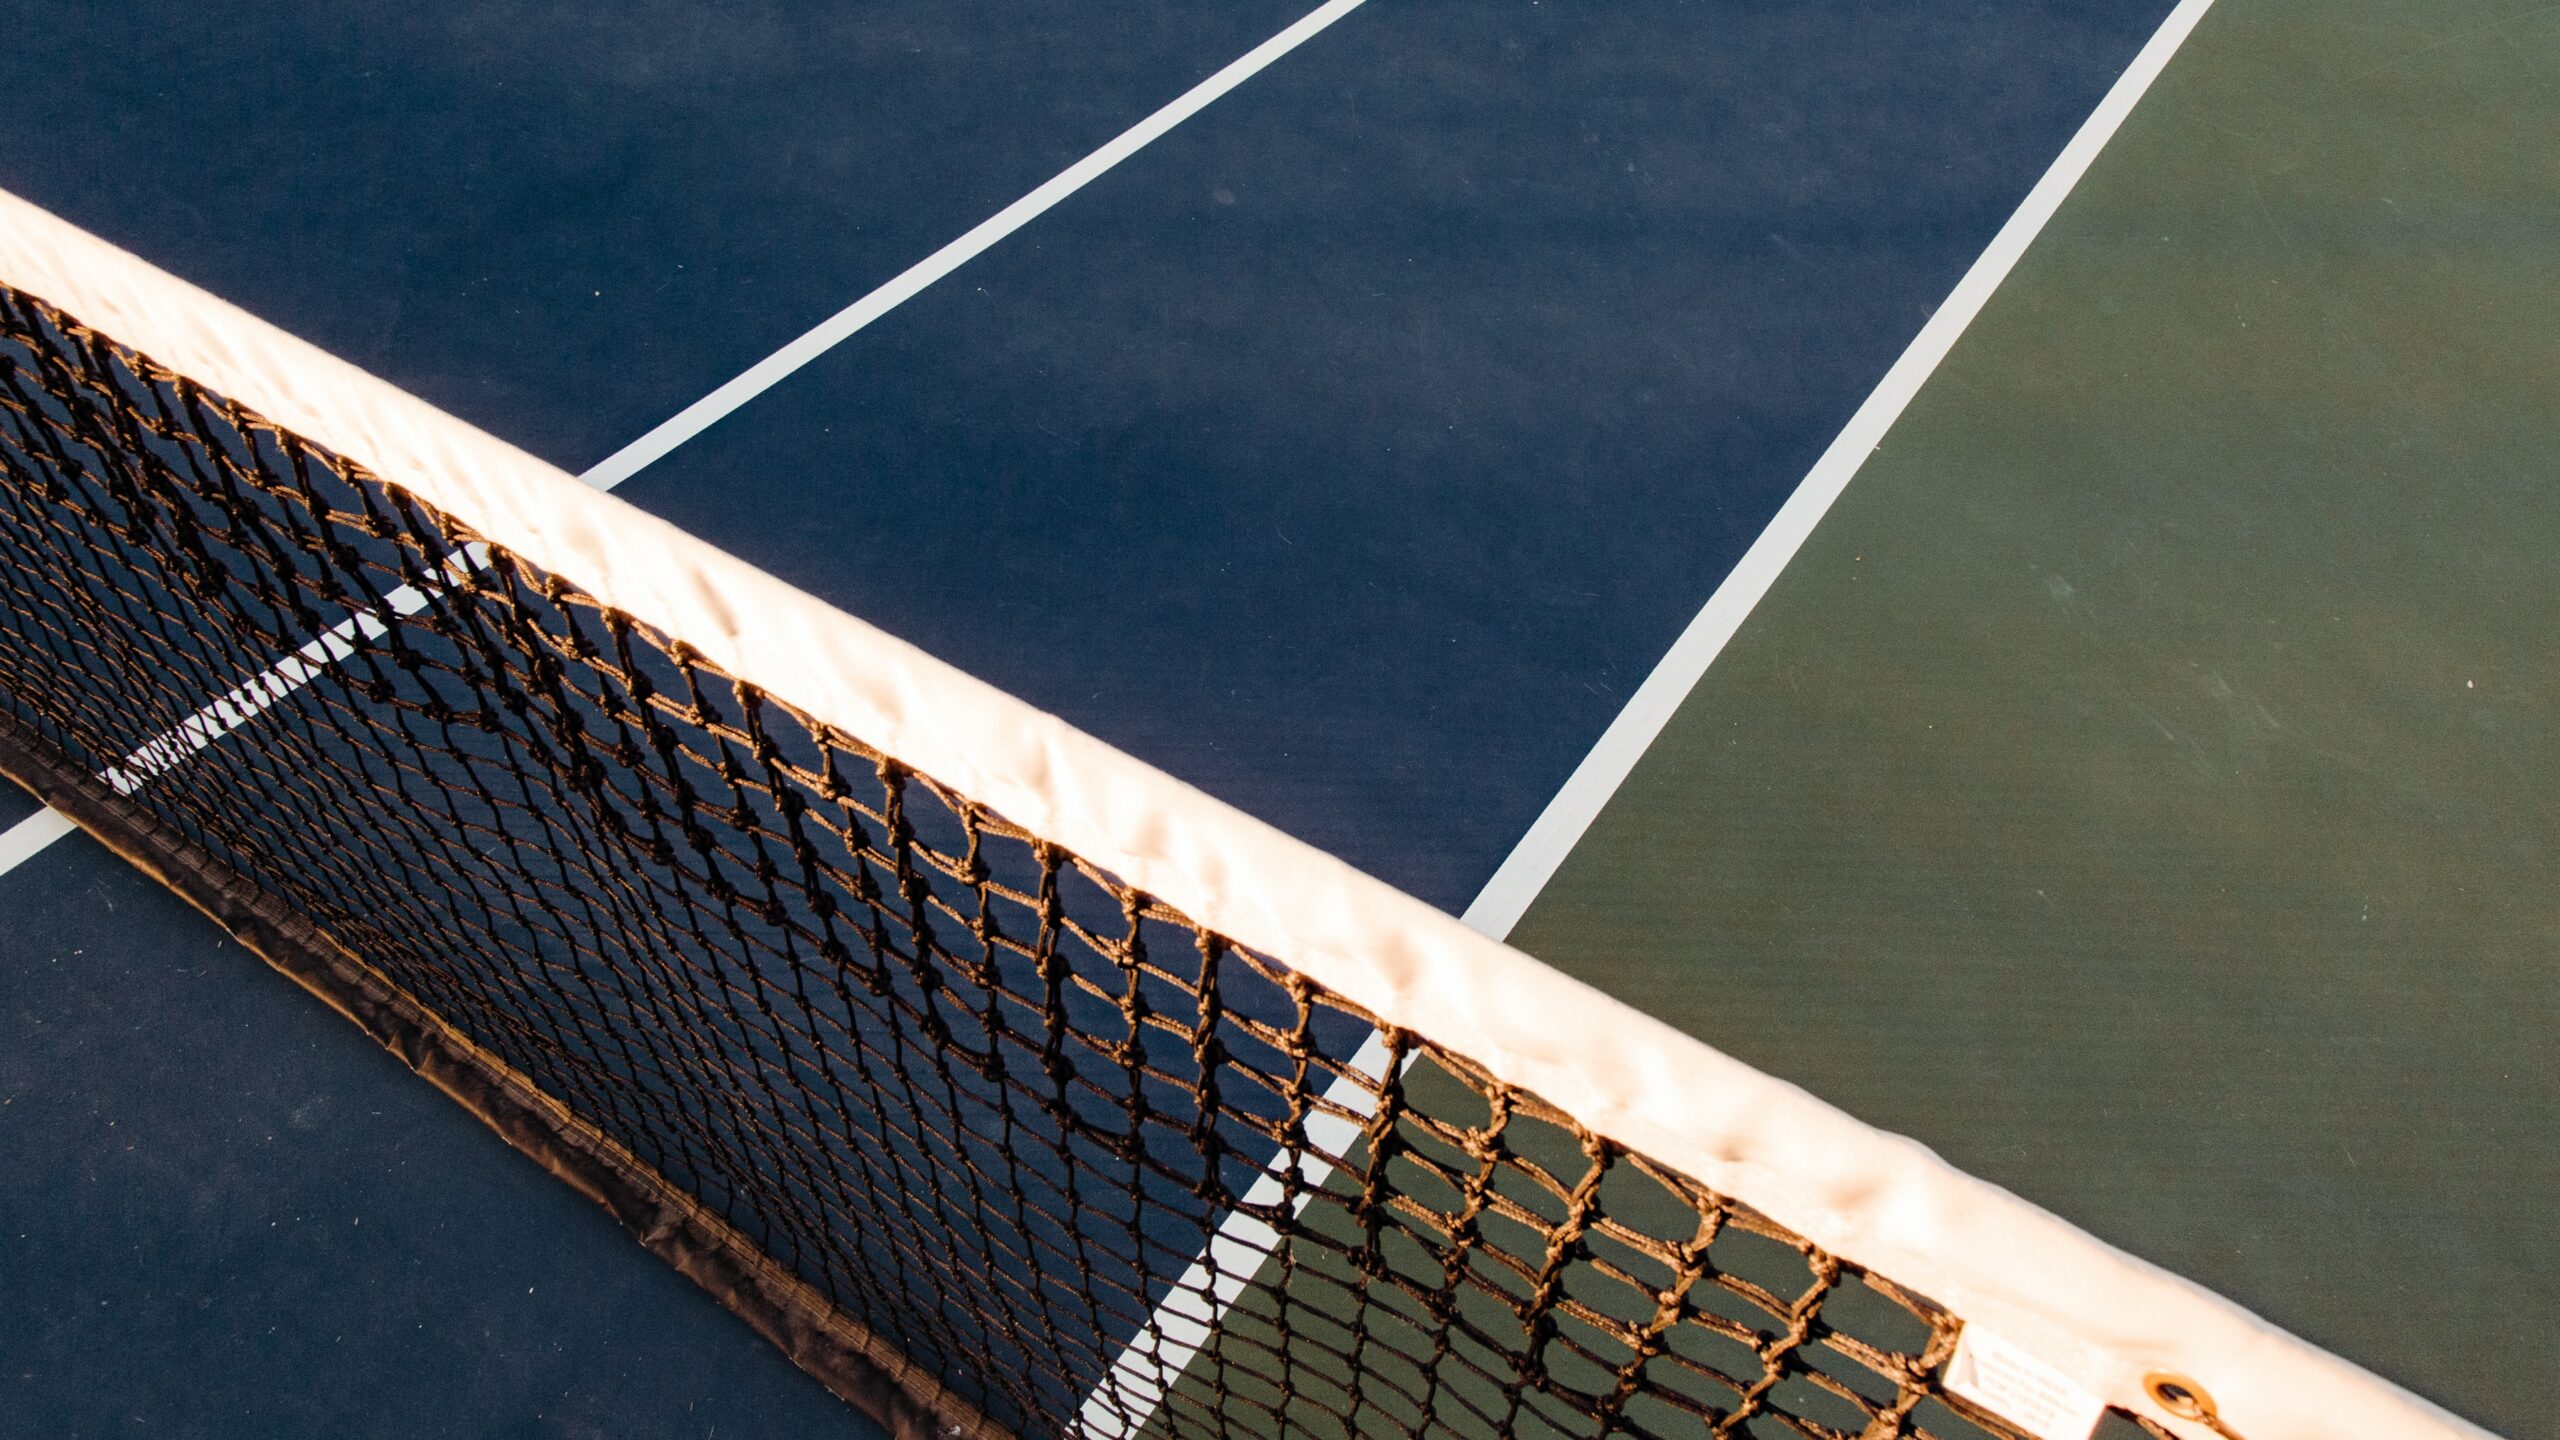 Wingfield Tennis Court » Meine Erfahrungen mit dem smarten Platz